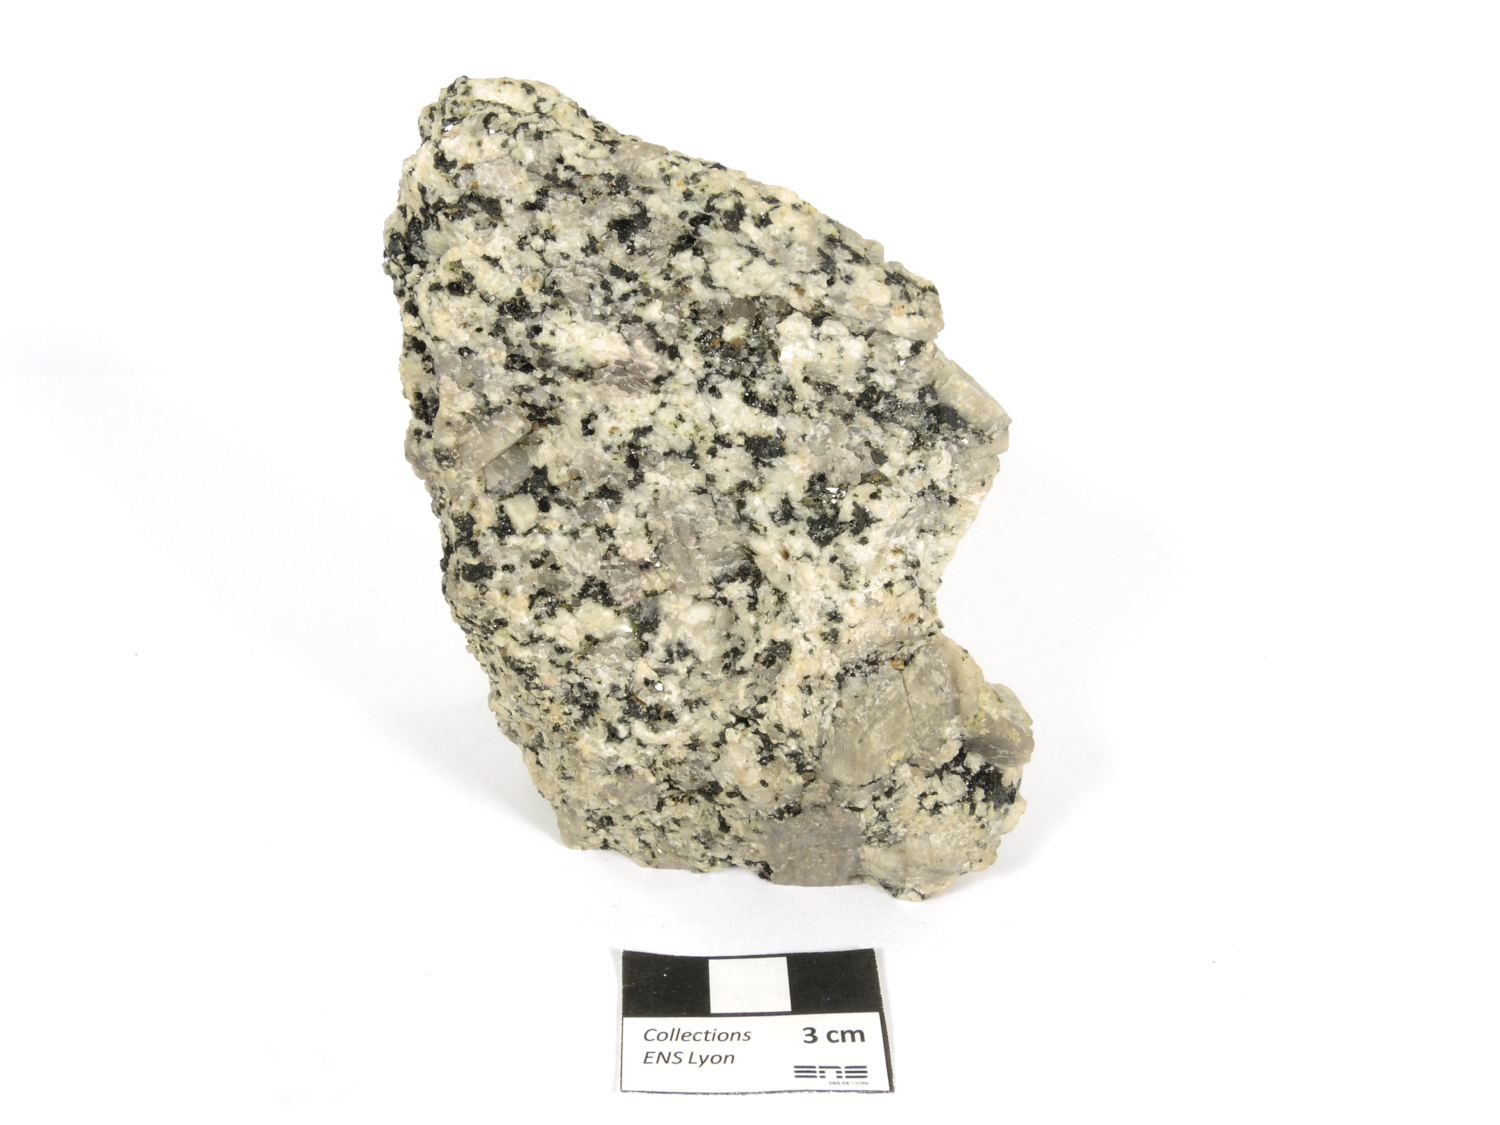 Granite monzonitique Granite monzonitique Corse  Lumio Punta Caldanu